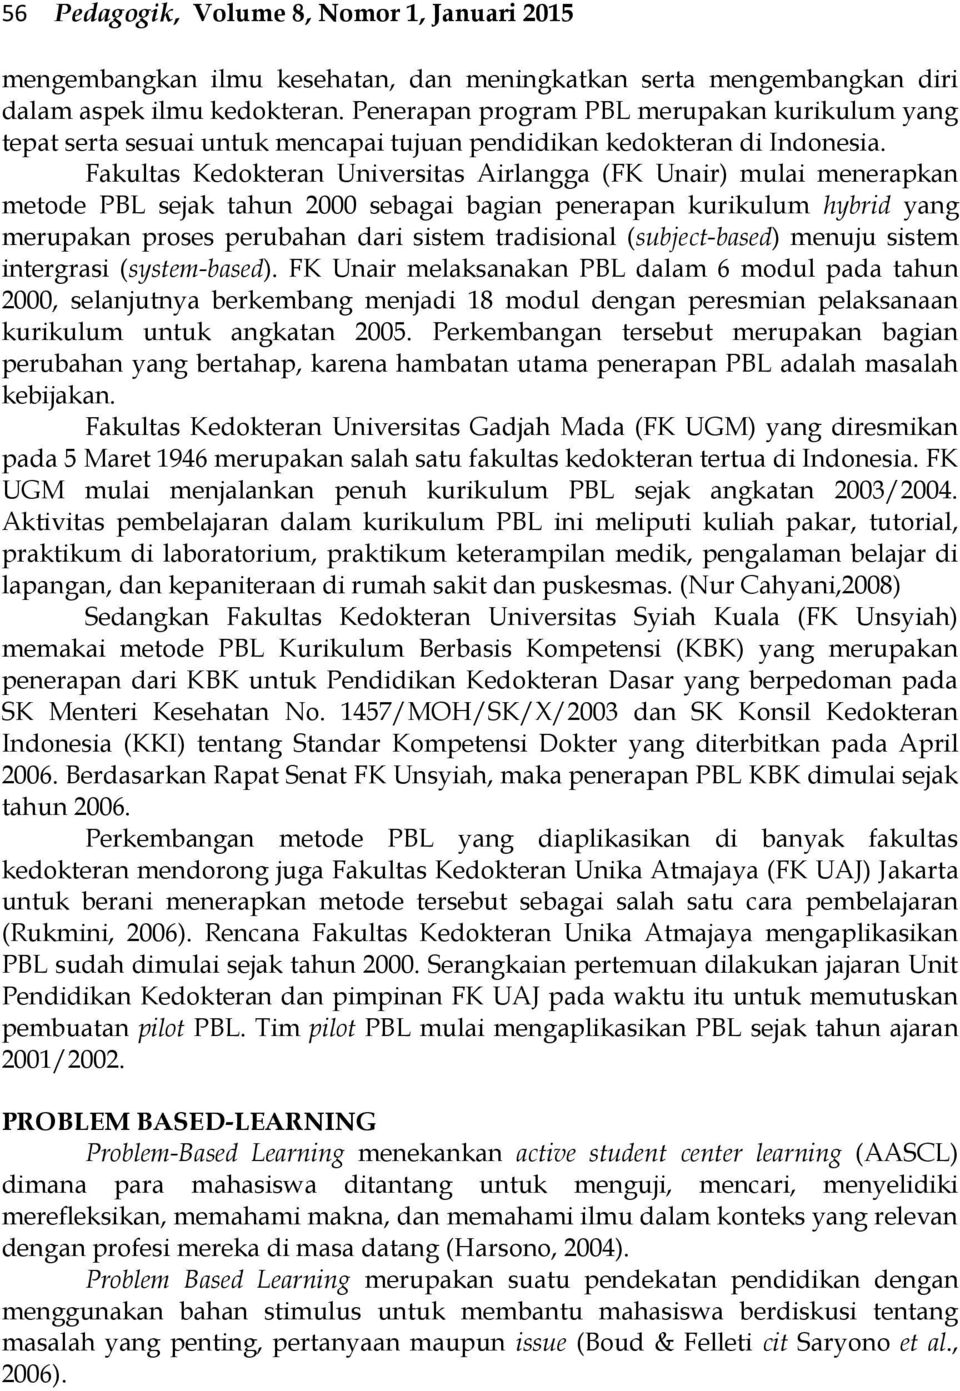 Fakultas Kedokteran Universitas Airlangga (FK Unair) mulai menerapkan metode PBL sejak tahun 2000 sebagai bagian penerapan kurikulum hybrid yang merupakan proses perubahan dari sistem tradisional